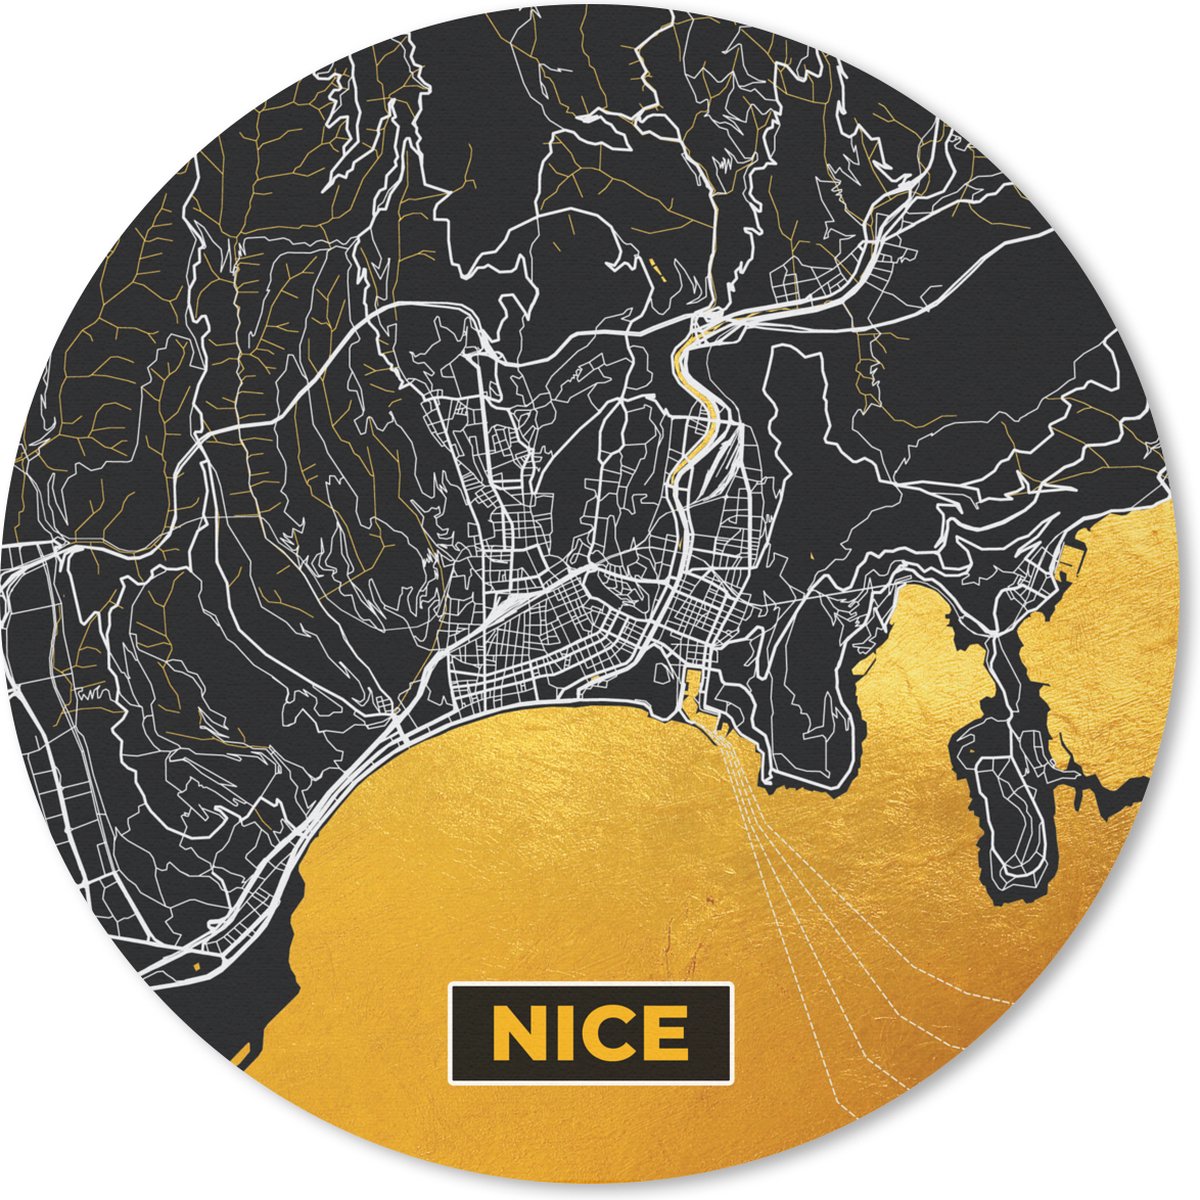 Muismat - Mousepad - Rond - Stadskaart – Nice - Frankrijk – Kaart – Plattegrond - 20x20 cm - Ronde muismat